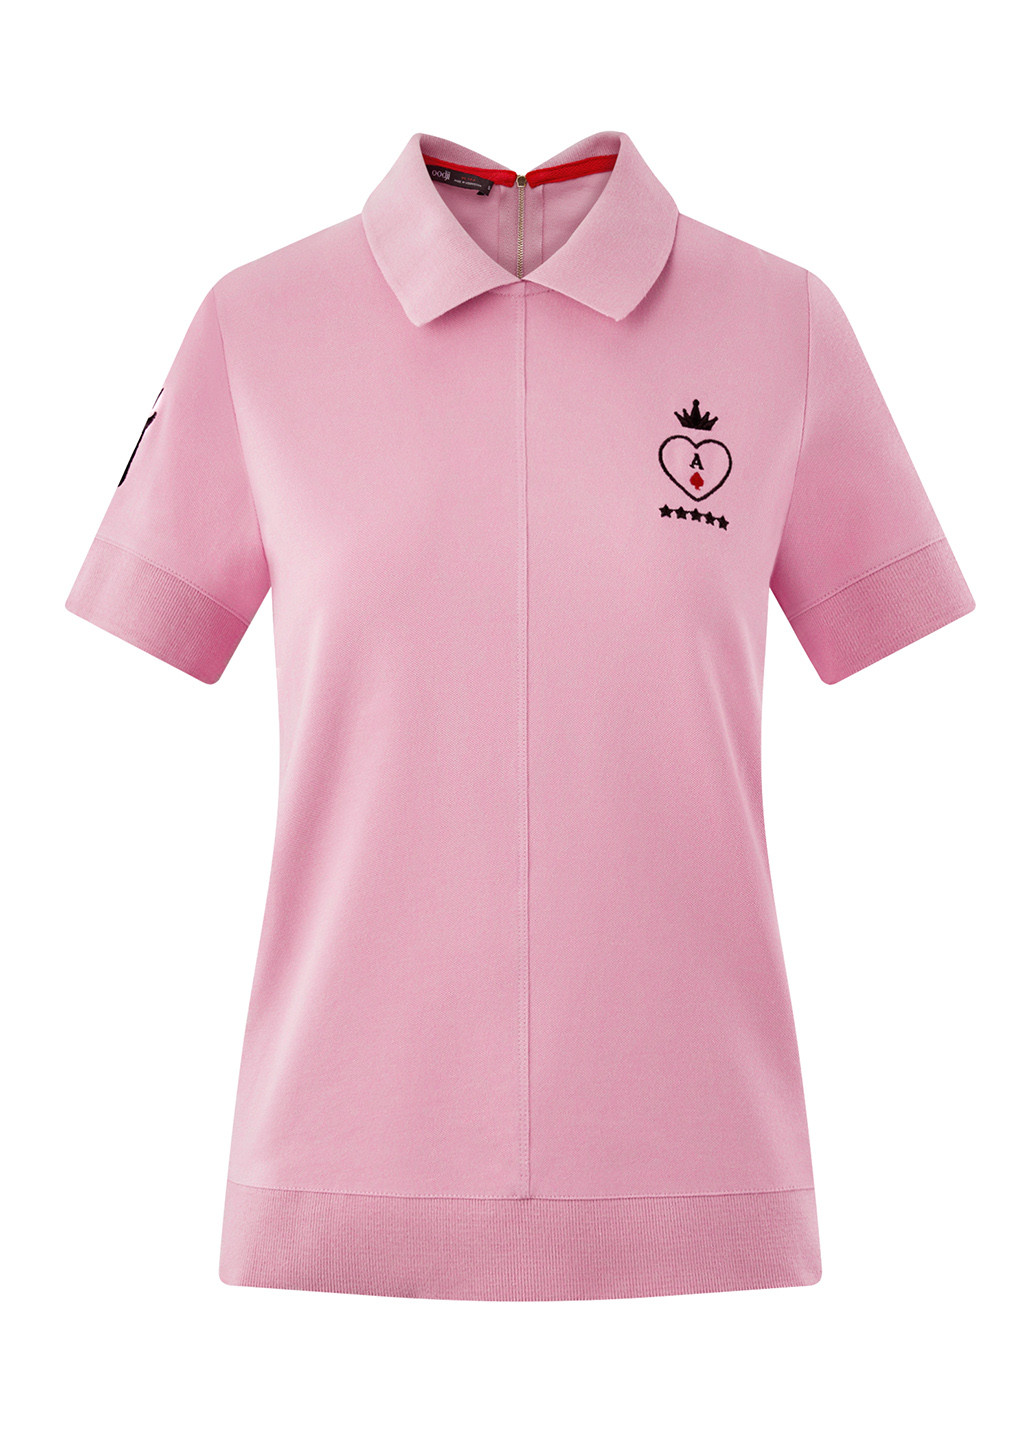 Светло-розовая женская футболка-поло Oodji с рисунком